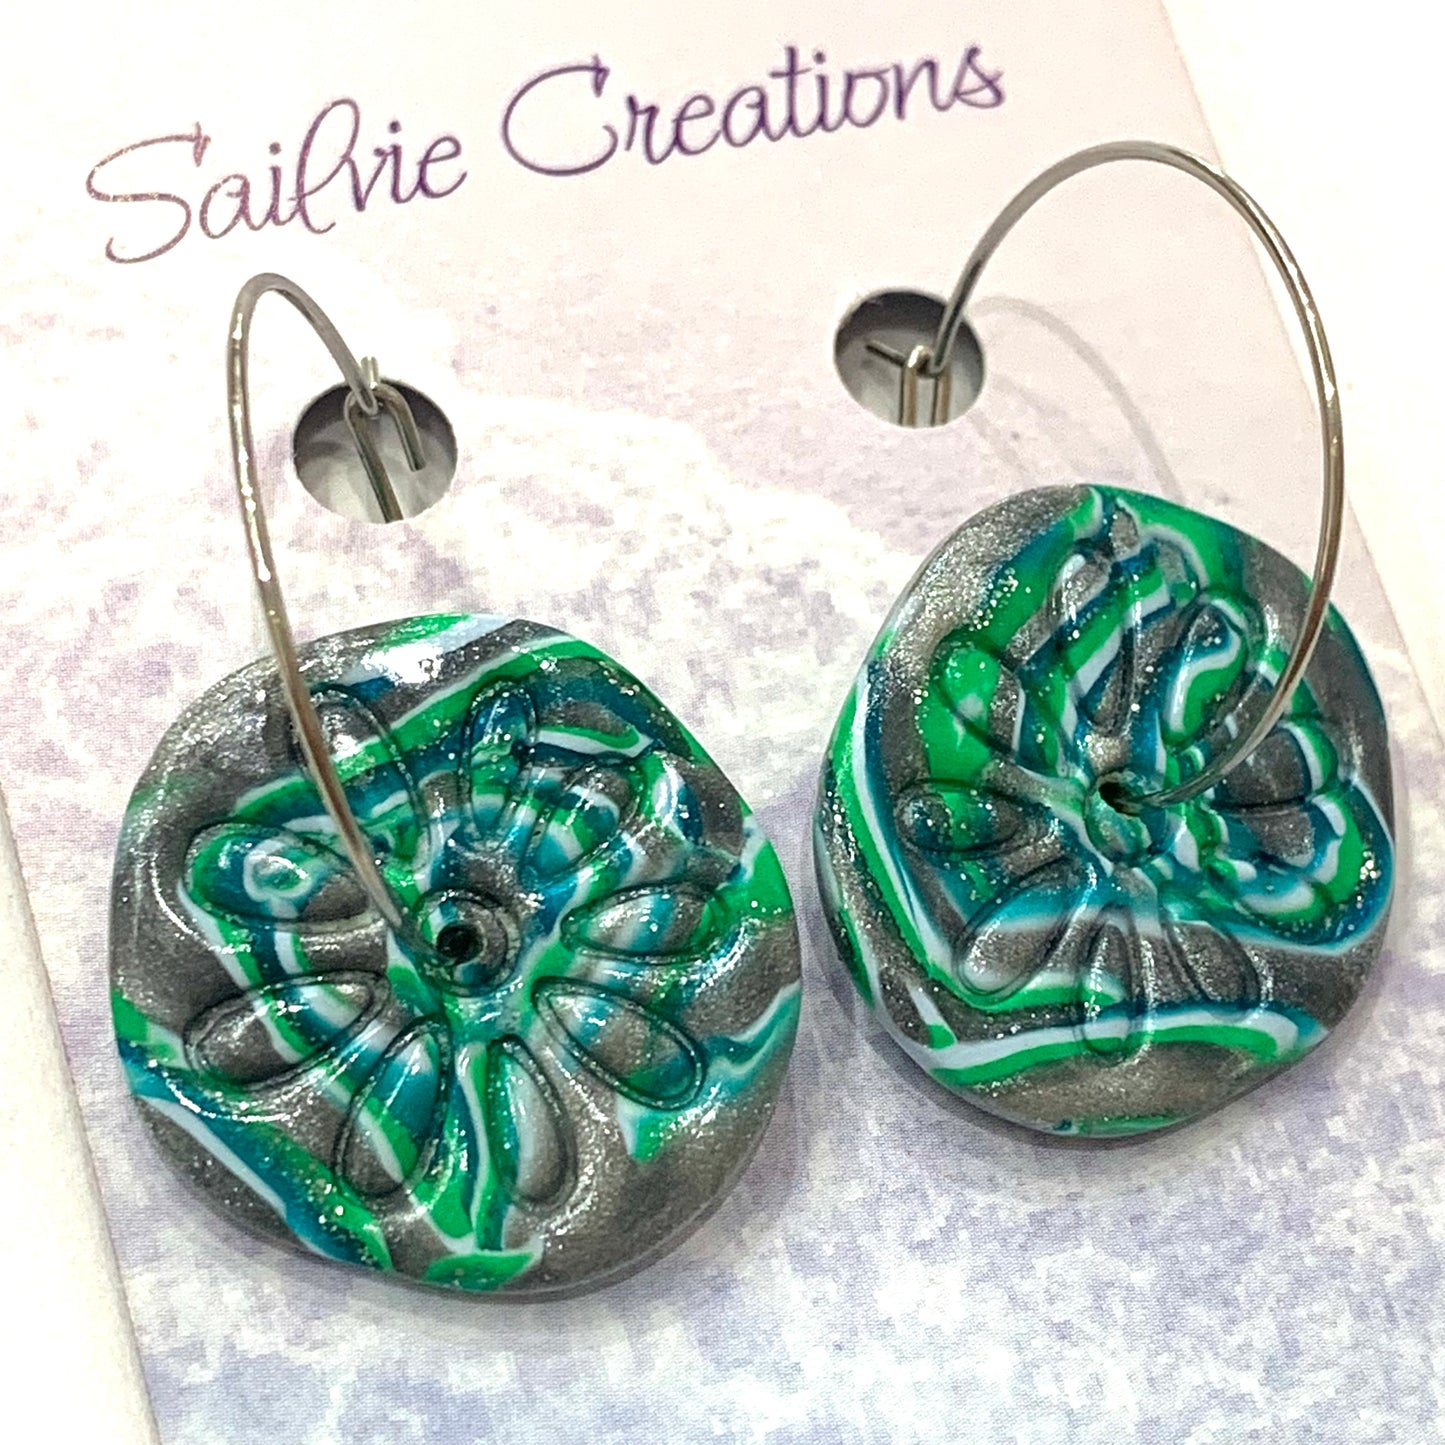 Sailvie Creations - Ocean Sand Dollar Hoop Dangle Earrings